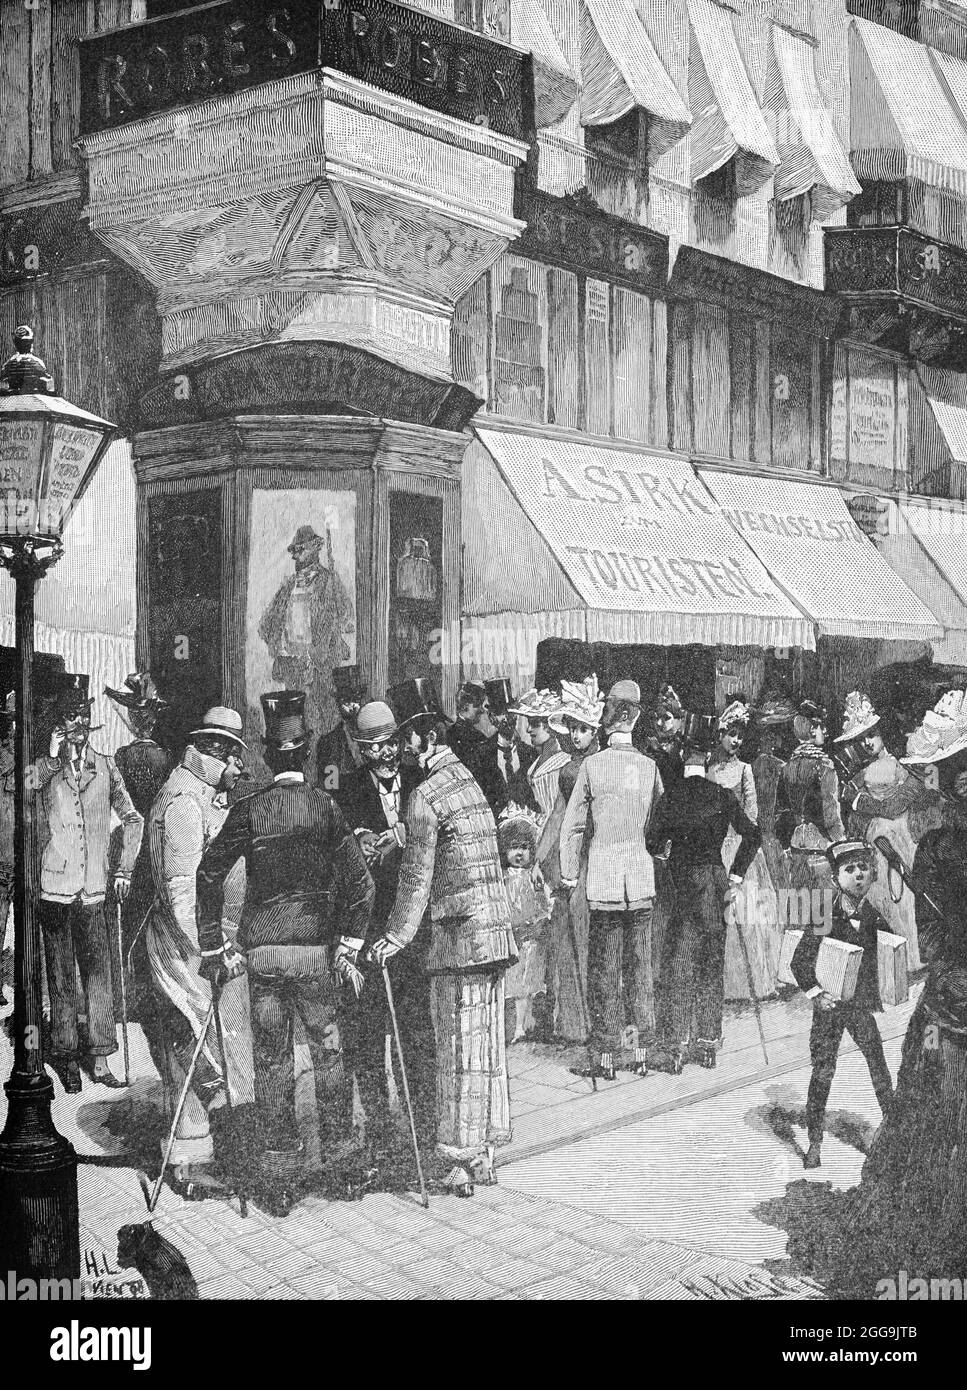 Straßenszene an einer lebhaften Ecke in Wien, Österreich, Europa, Hauptstädte der Welt, historische Illustration 1897 Stockfoto